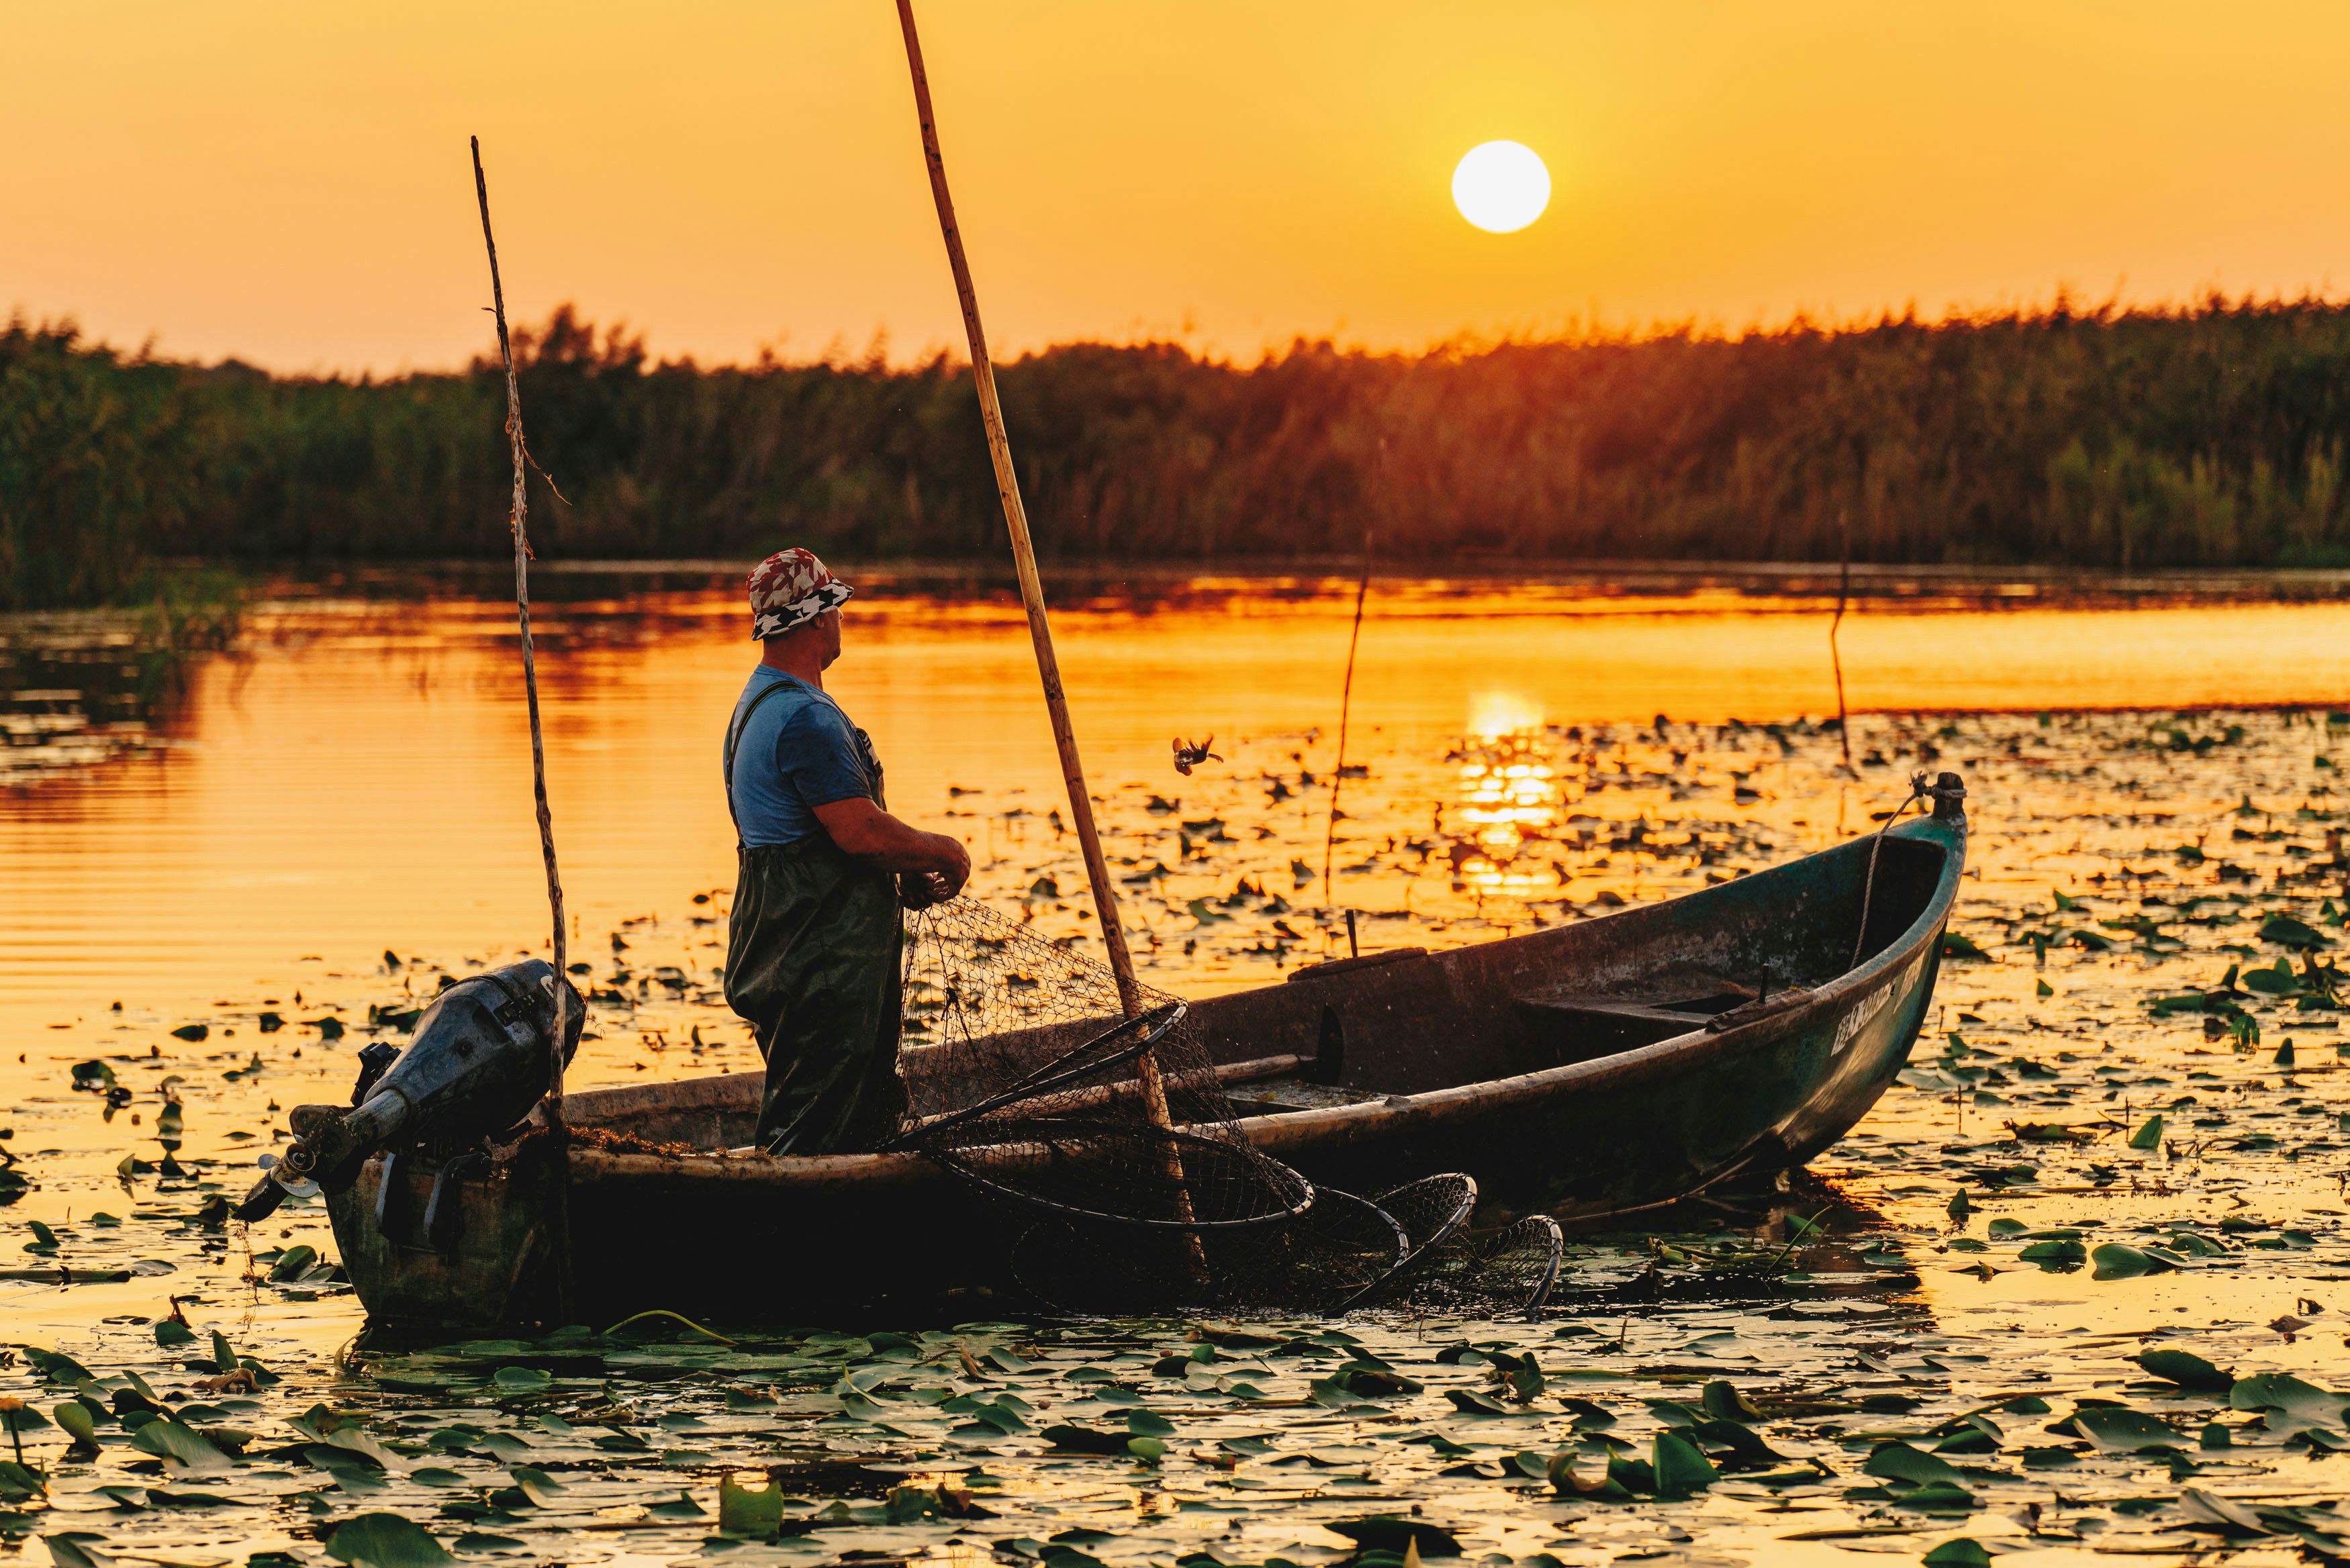 ROMANIA, DANUBE DELTA, AUGUST 2019: Sunrise in the Danube Delta. Fisherman checking the nets overnight catch